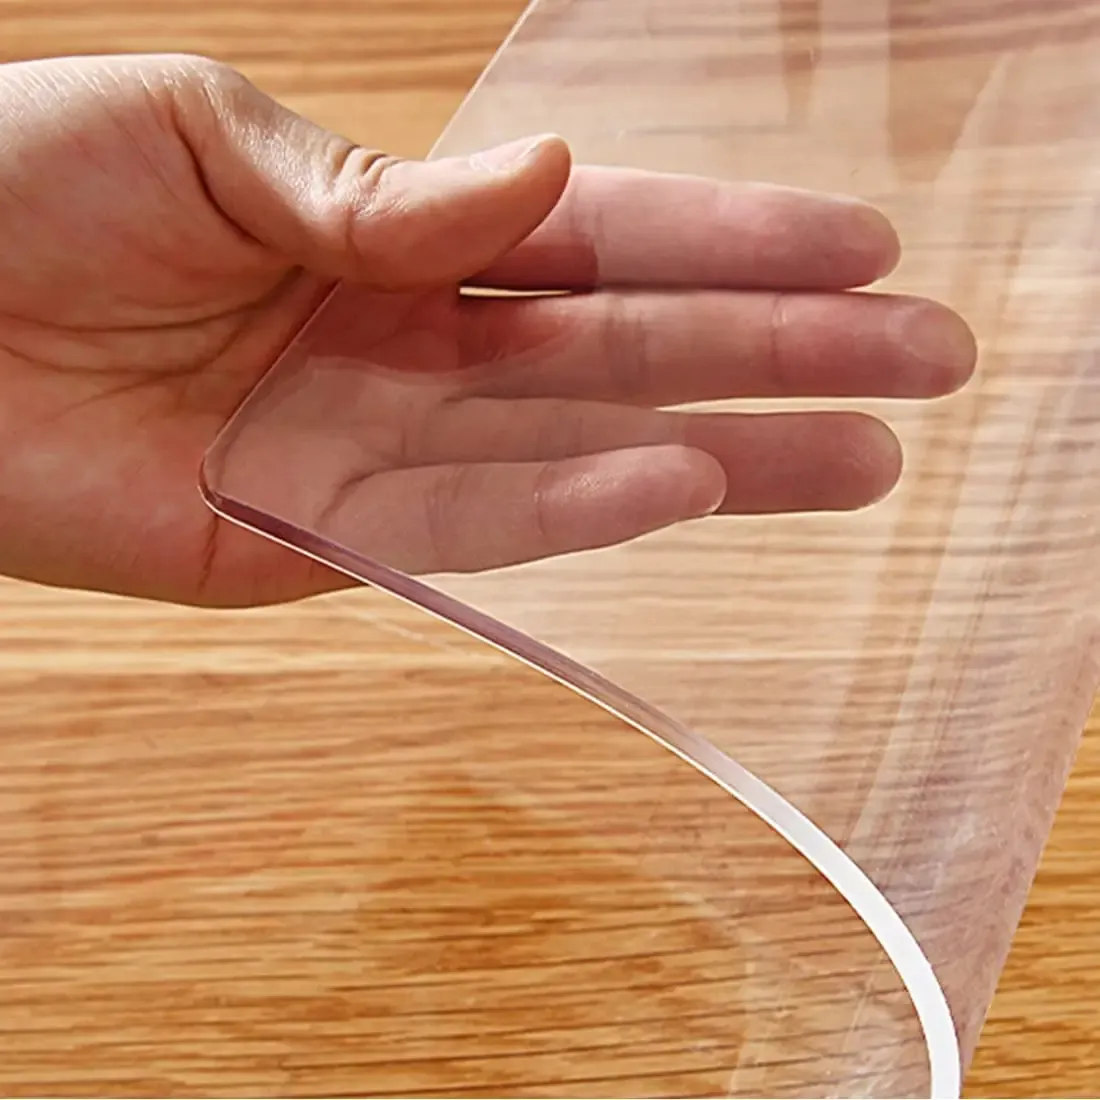 Taplak meja plastik pvc tahan air 0.2 mm-2 mm, taplak meja vinil kustom kualitas tinggi mudah dibersihkan